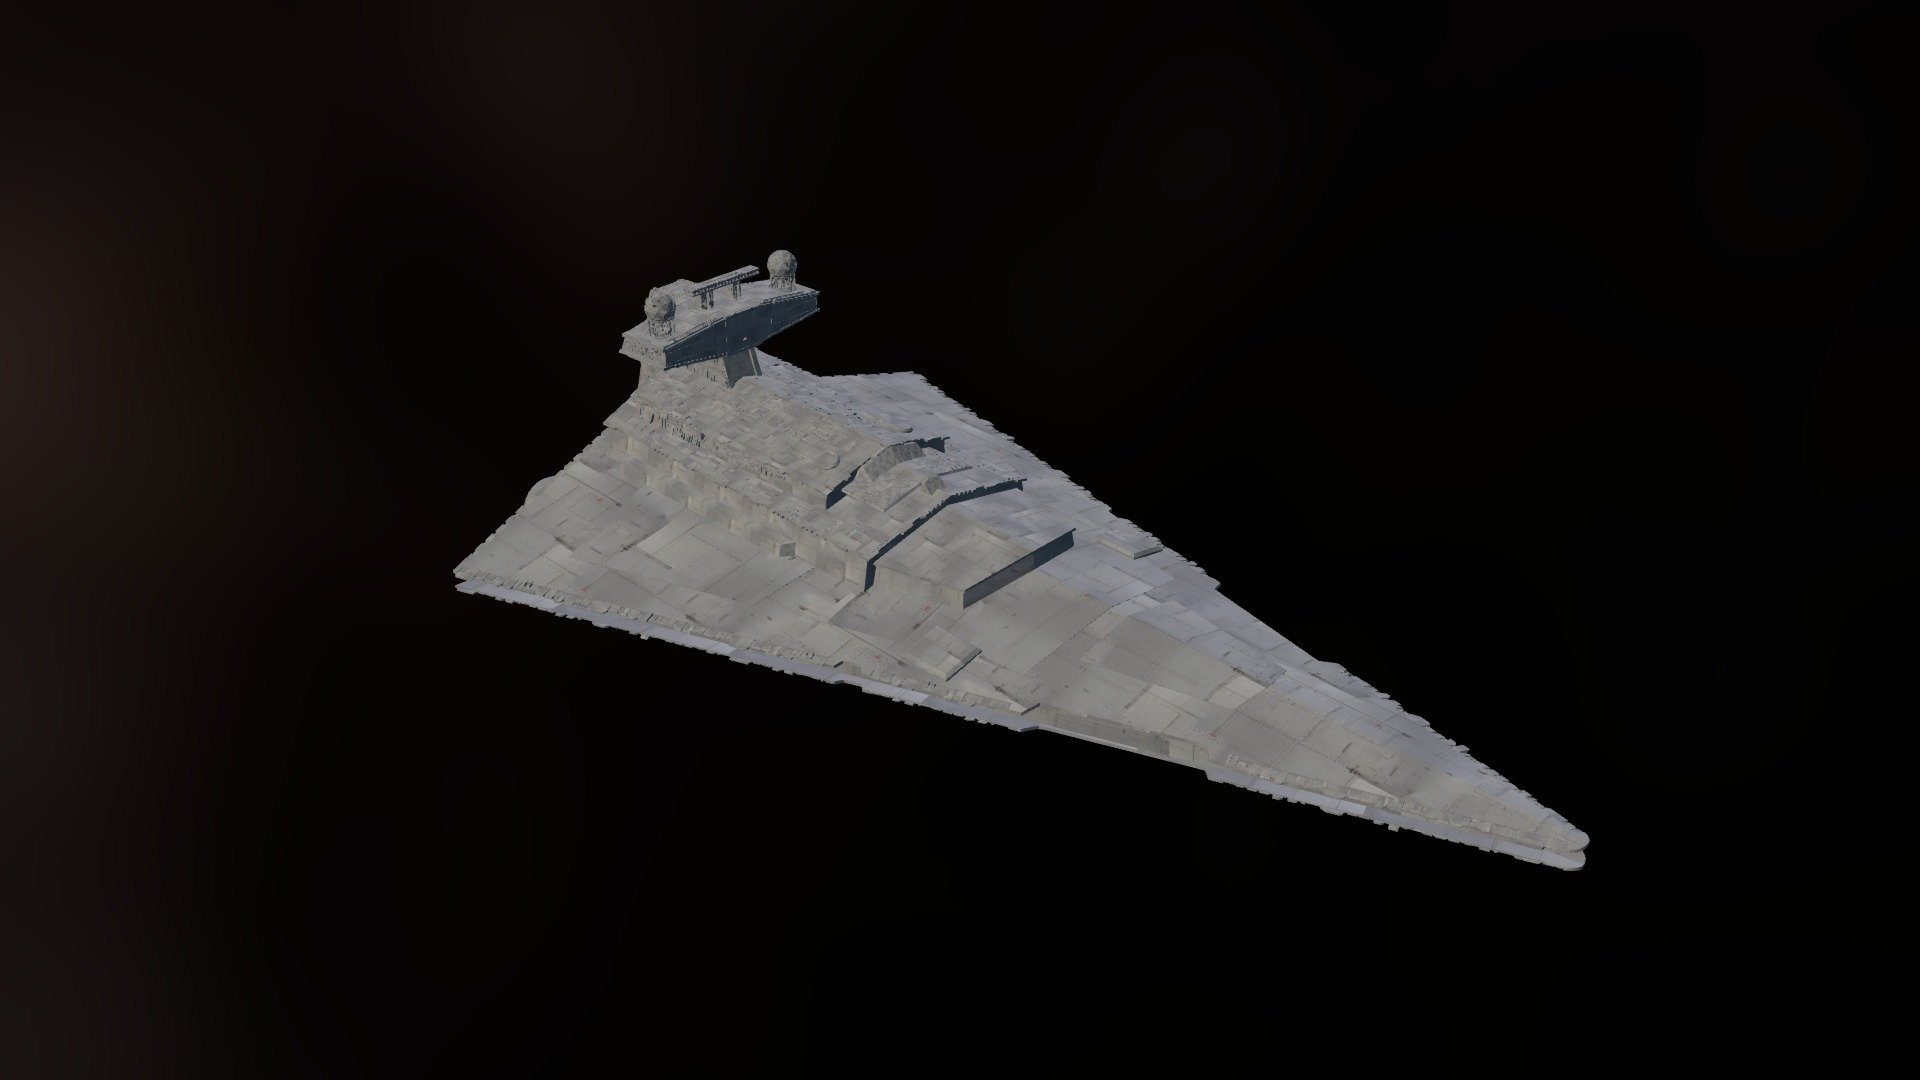 Imperial Star Destroyer [version 0.8]